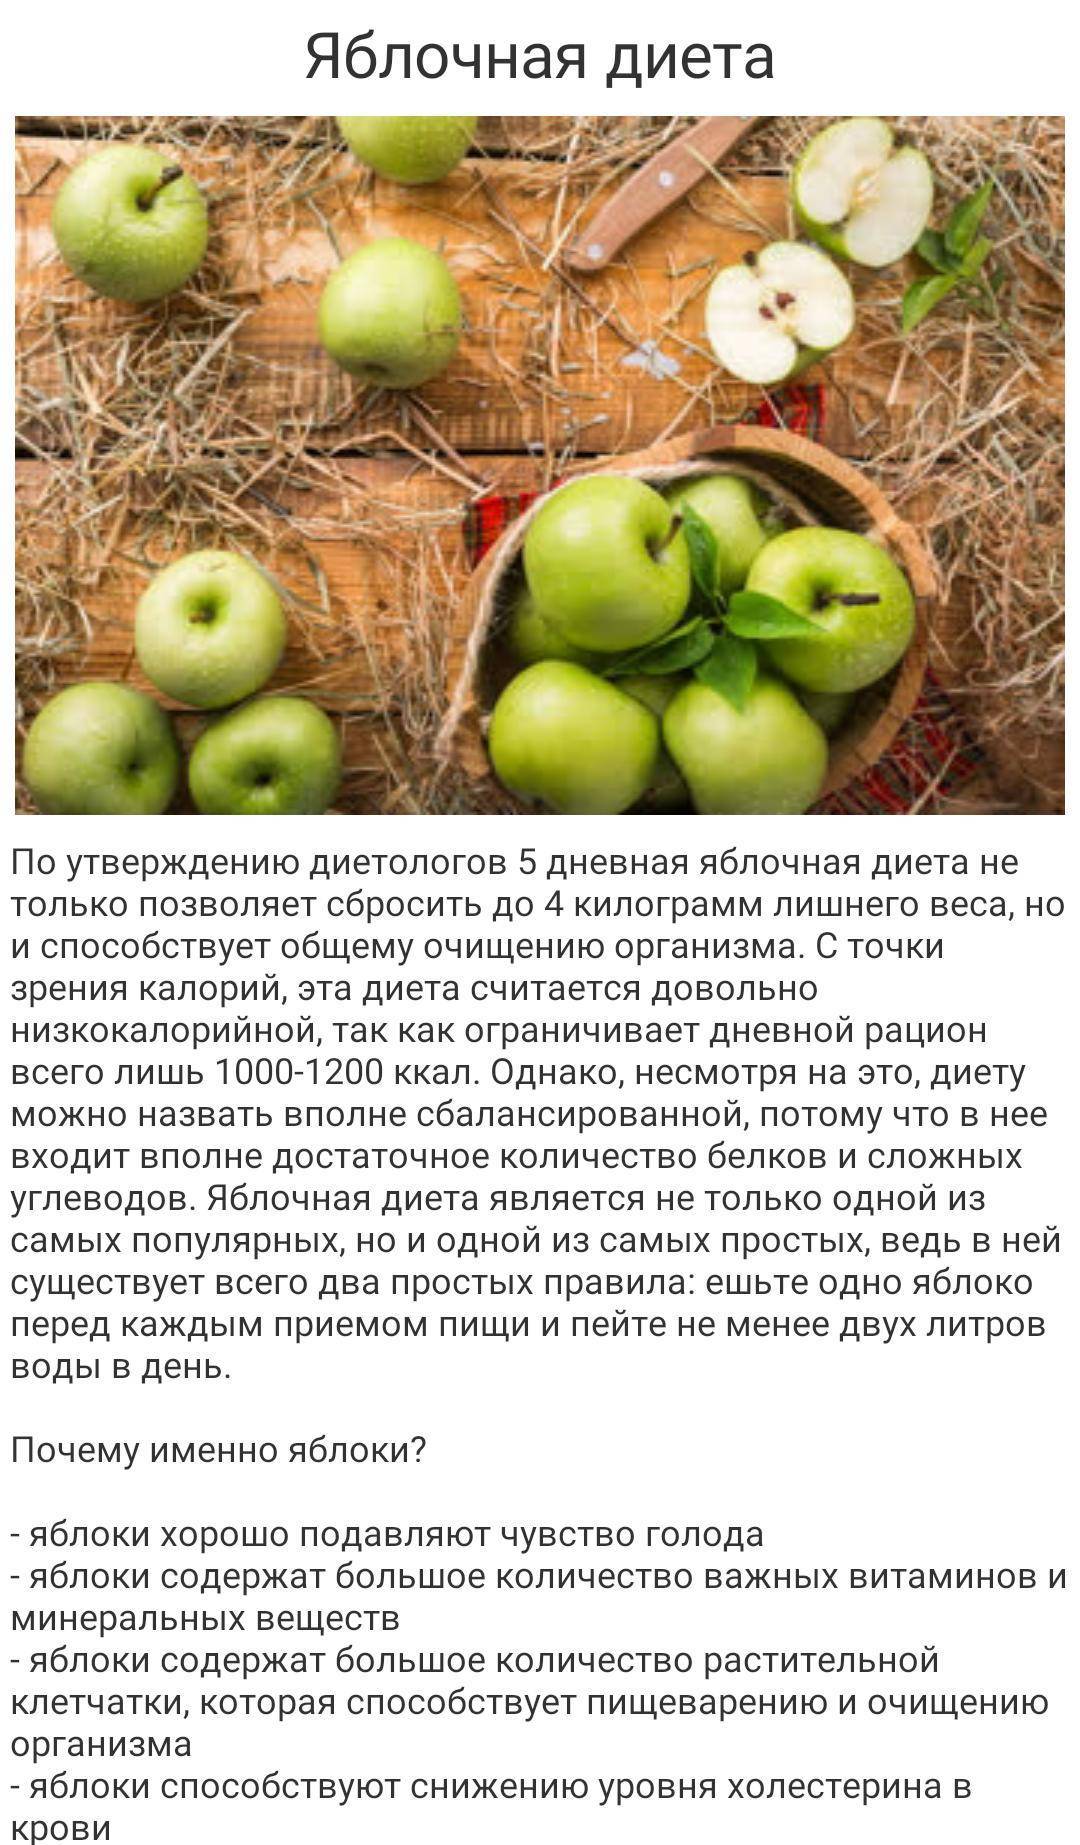 Яблочная диета для похудения на 10 кг за неделю: можно ли похудеть на яблоках и воде